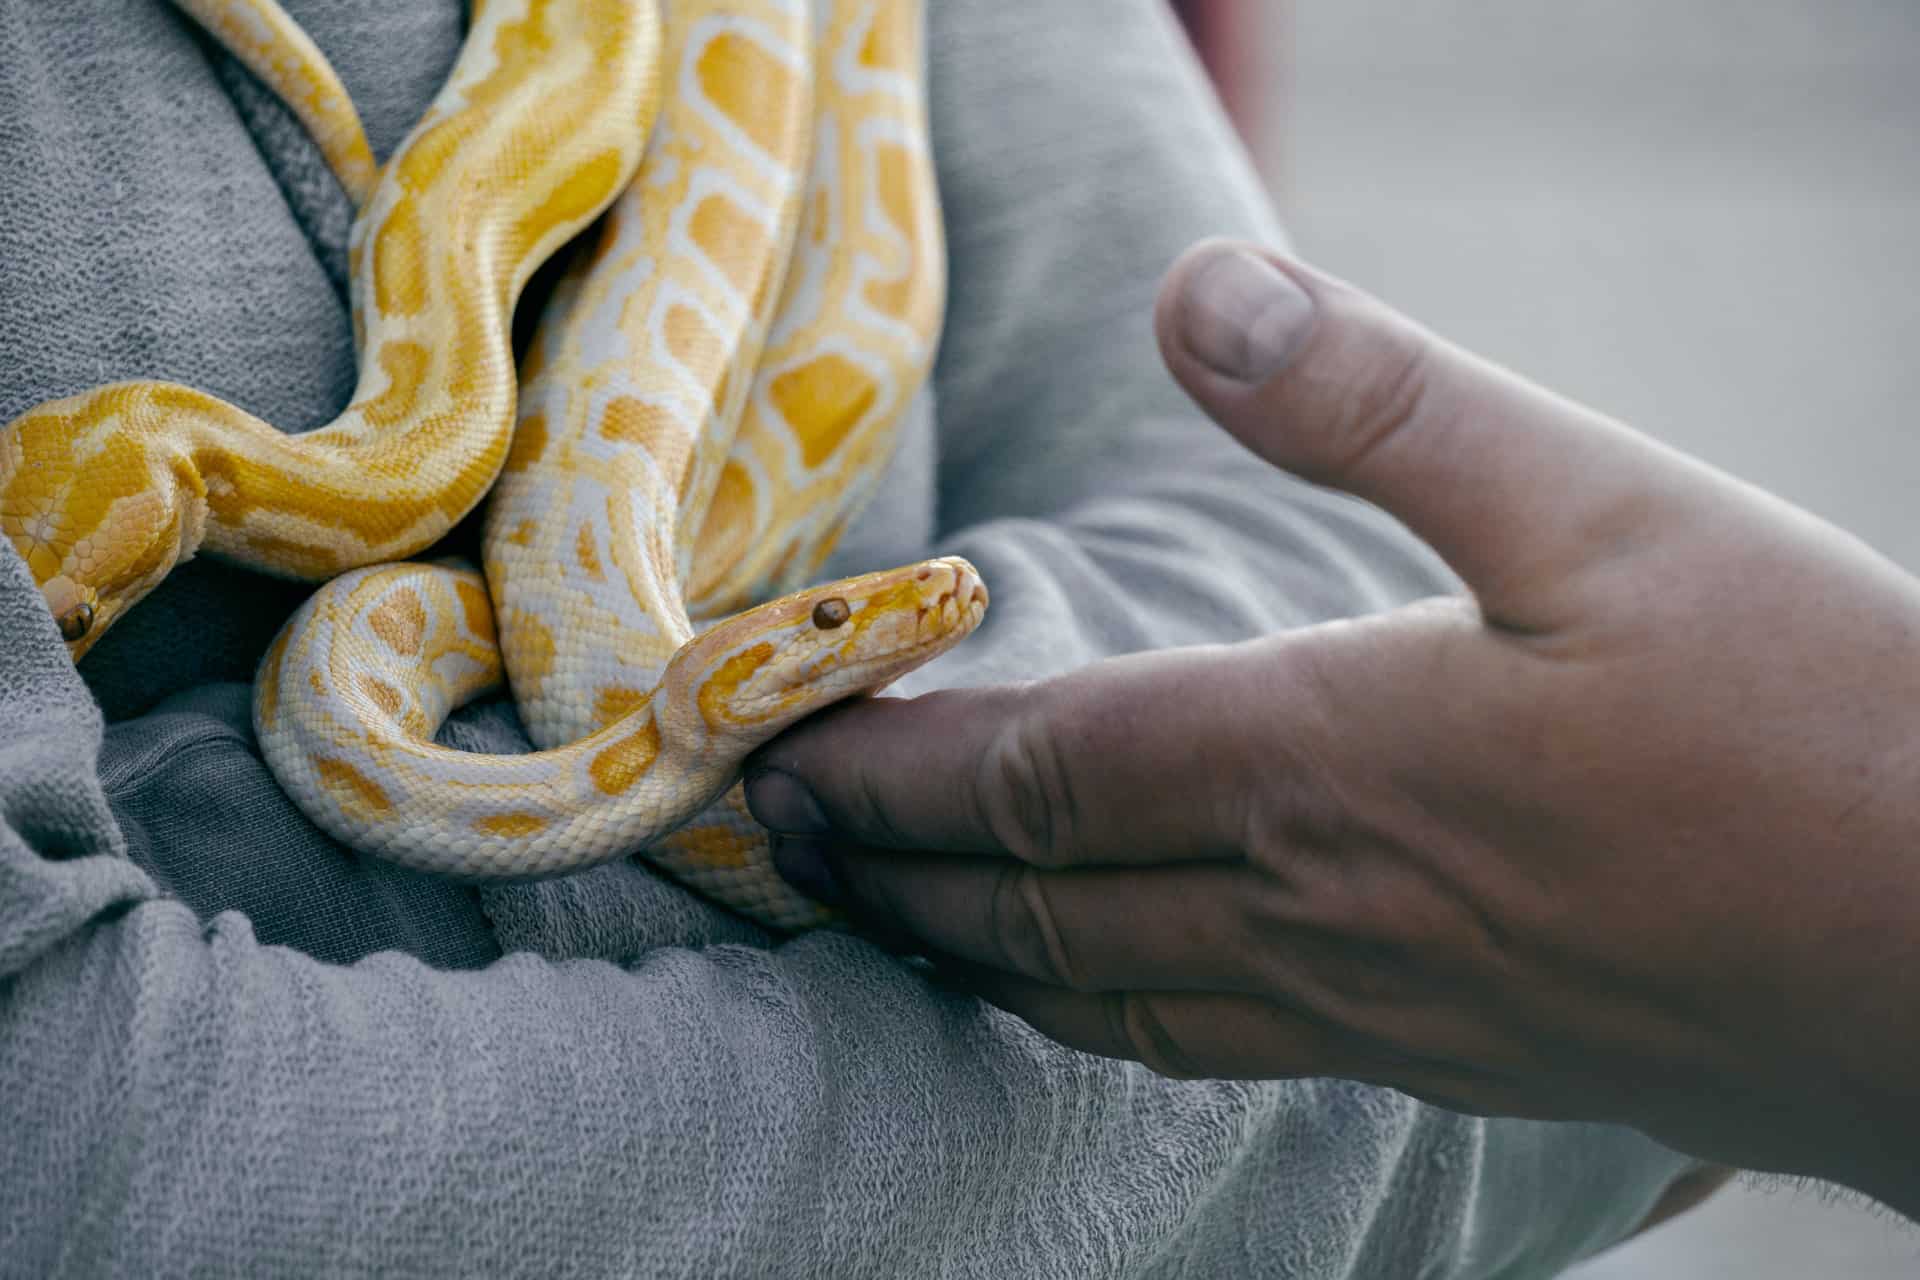 Dunkler Tigerpython (Python bivittatus) auf dem Arm